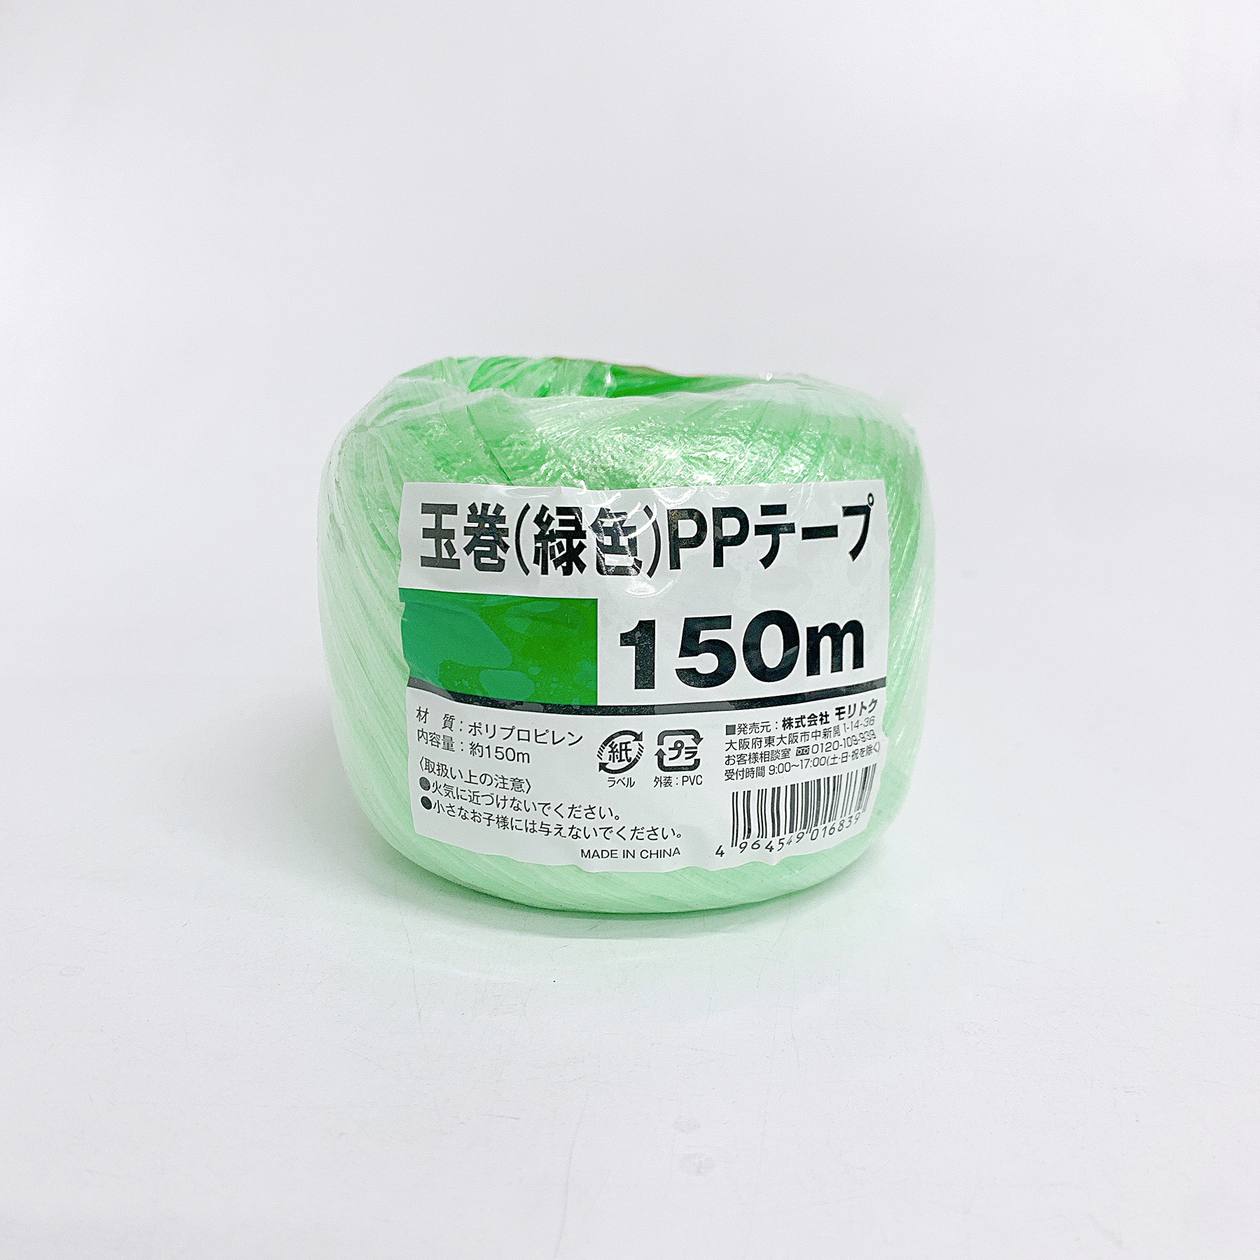 緑色玉巻PPテープ150m 0808/042896